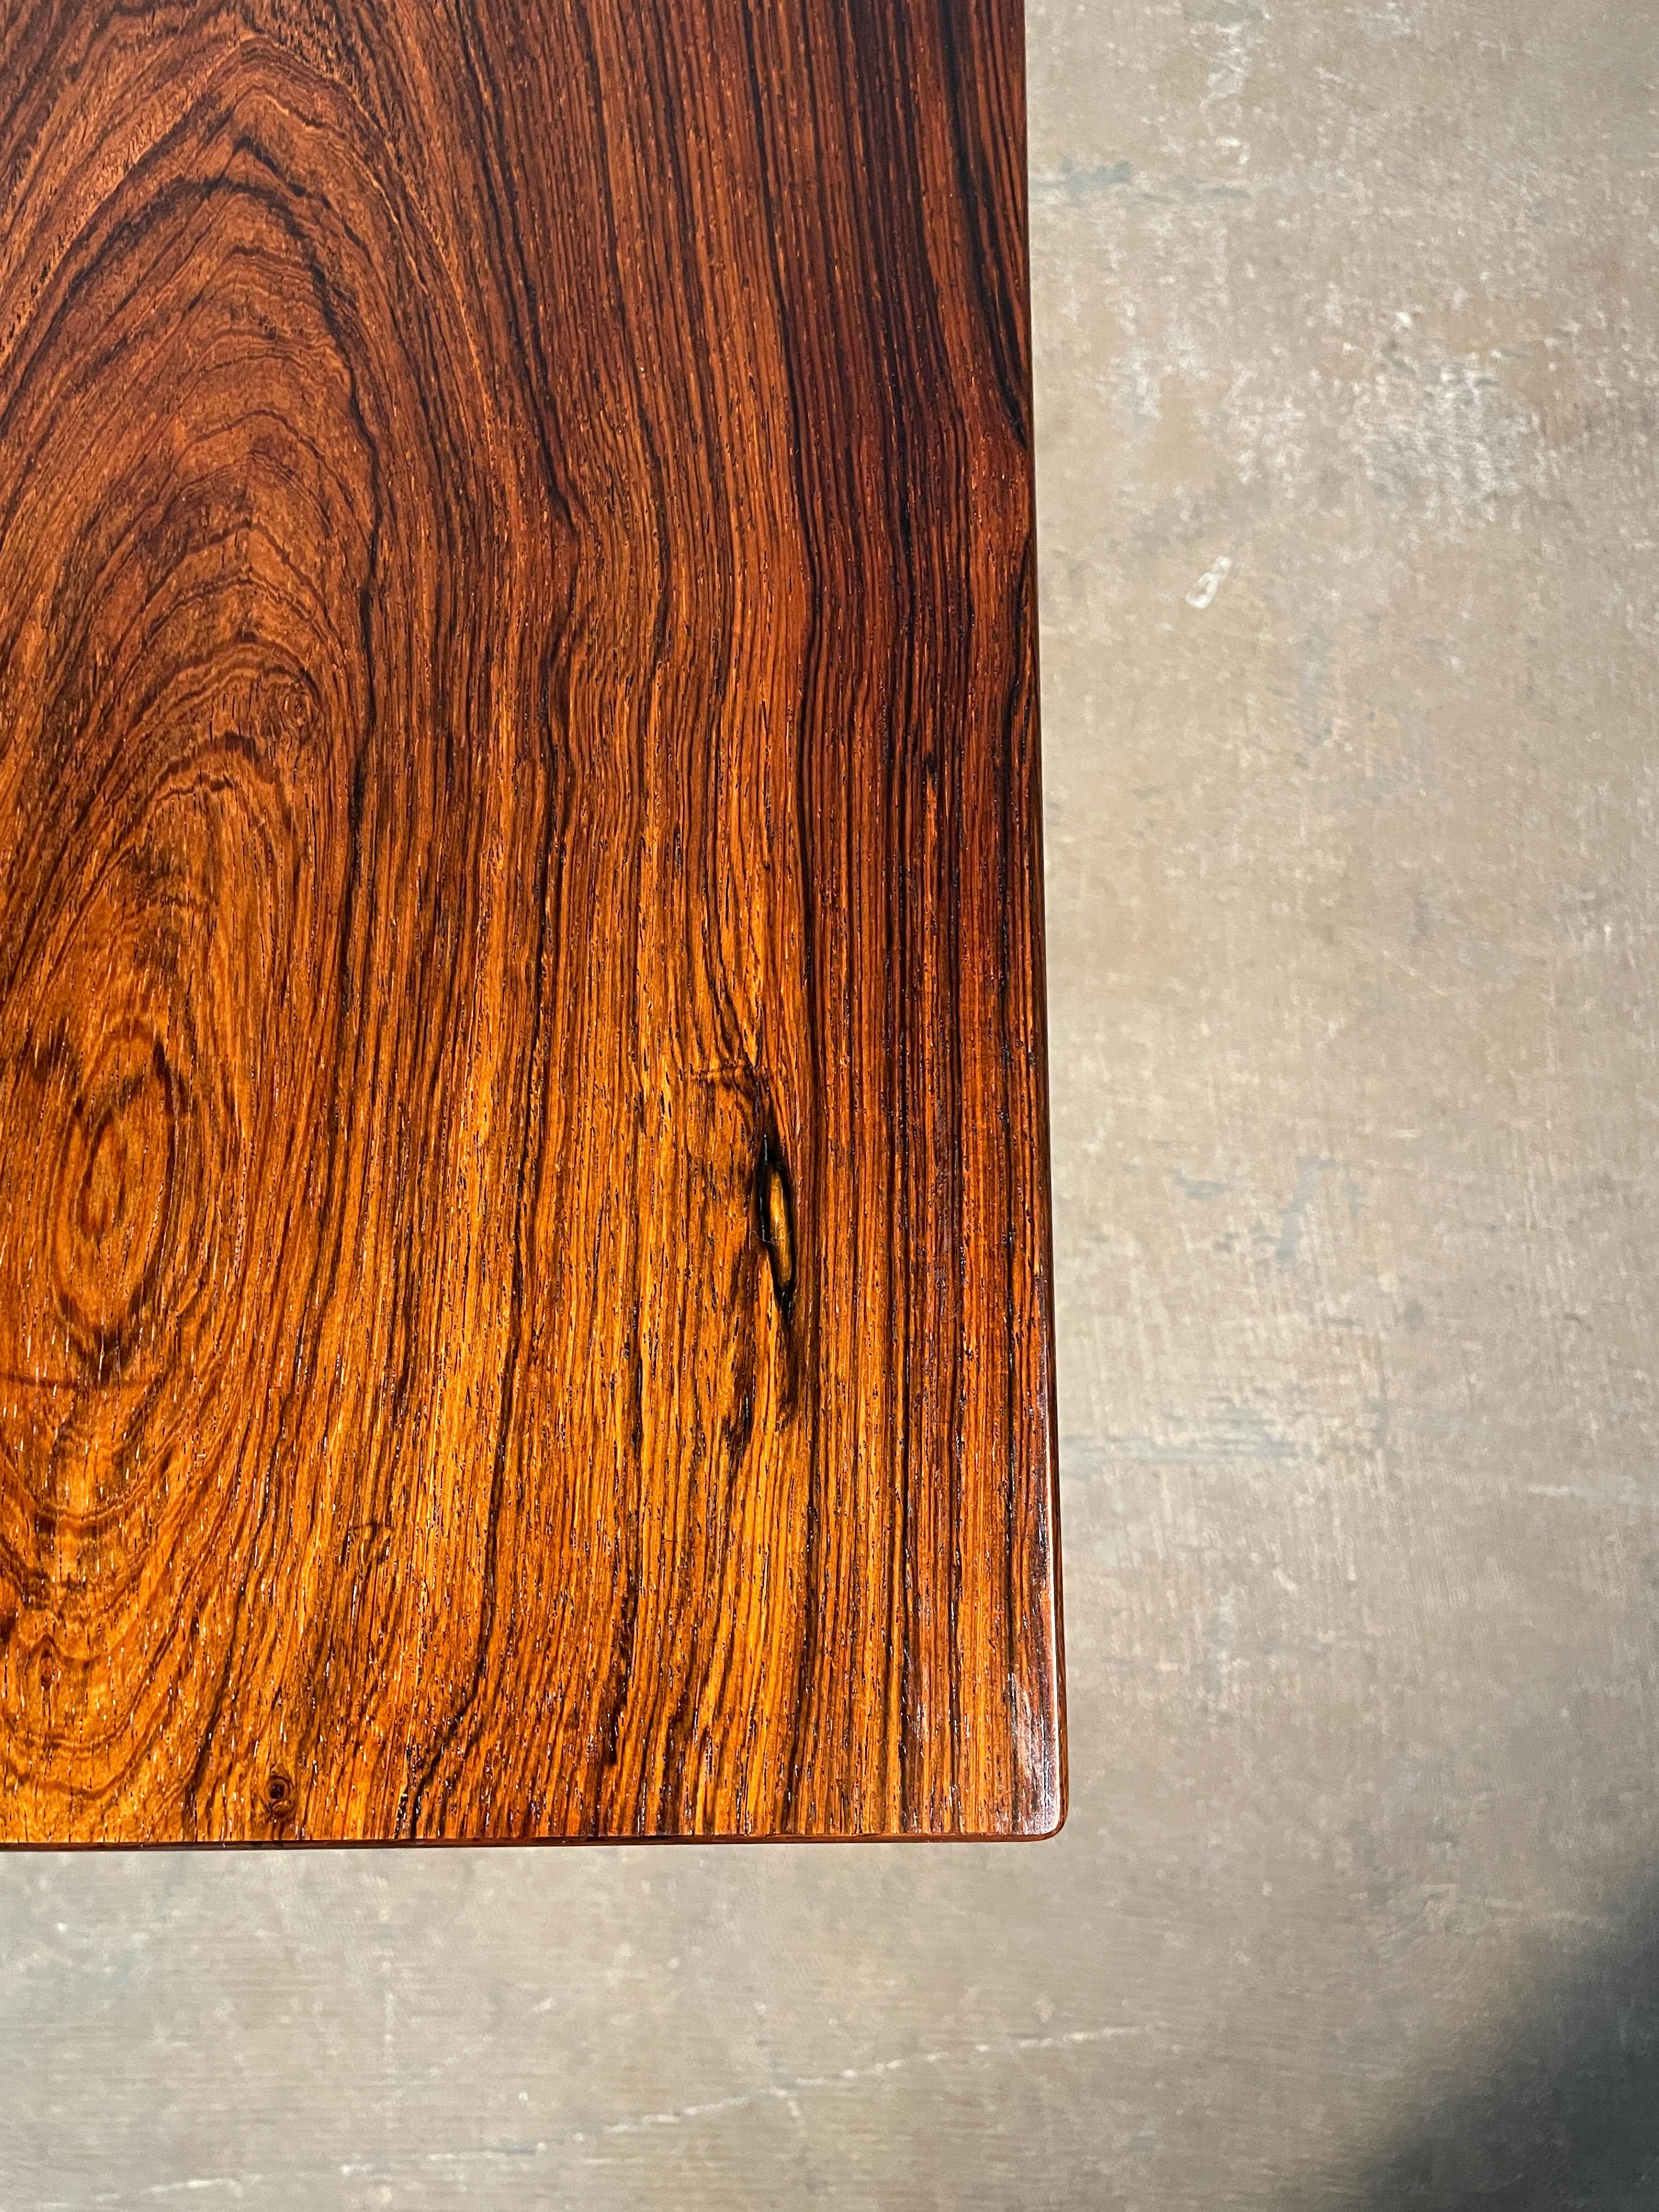 Cette table basse rare et délicieusement bien faite, modèle U55, a été conçue par Helge Vestergaard Jensen et fabriquée par l'ébéniste Peder Pedersen dans les années 1950. L'aspect le plus frappant de cette table basse est le grain de bois de